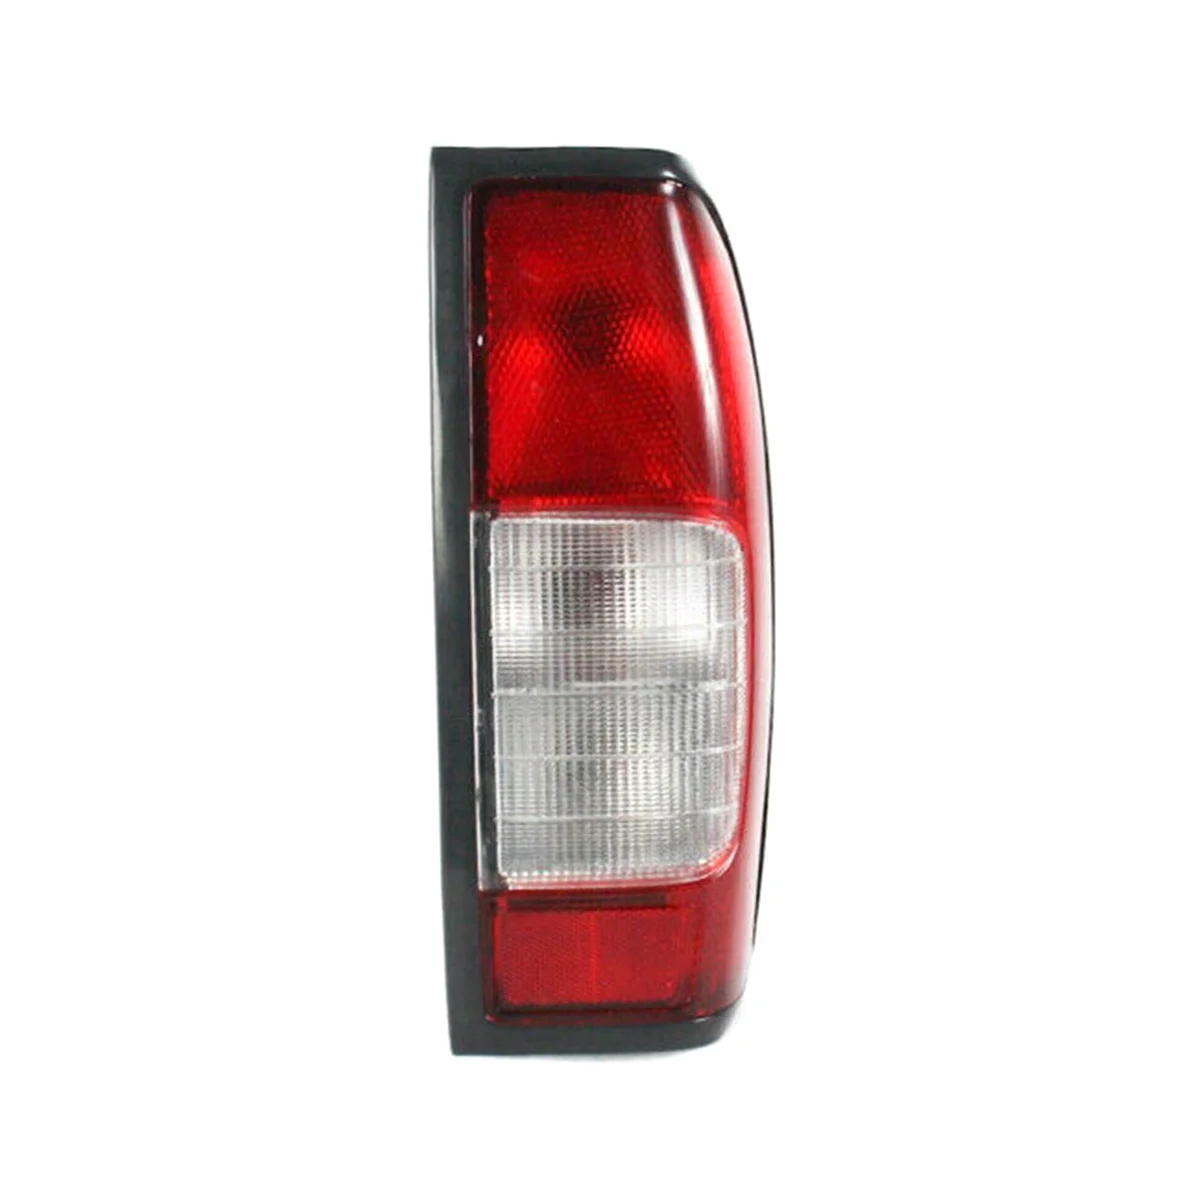 

Автомобильная задняя лампа для Nissan Navara D22 Ute DX ST светильник 1997-2015